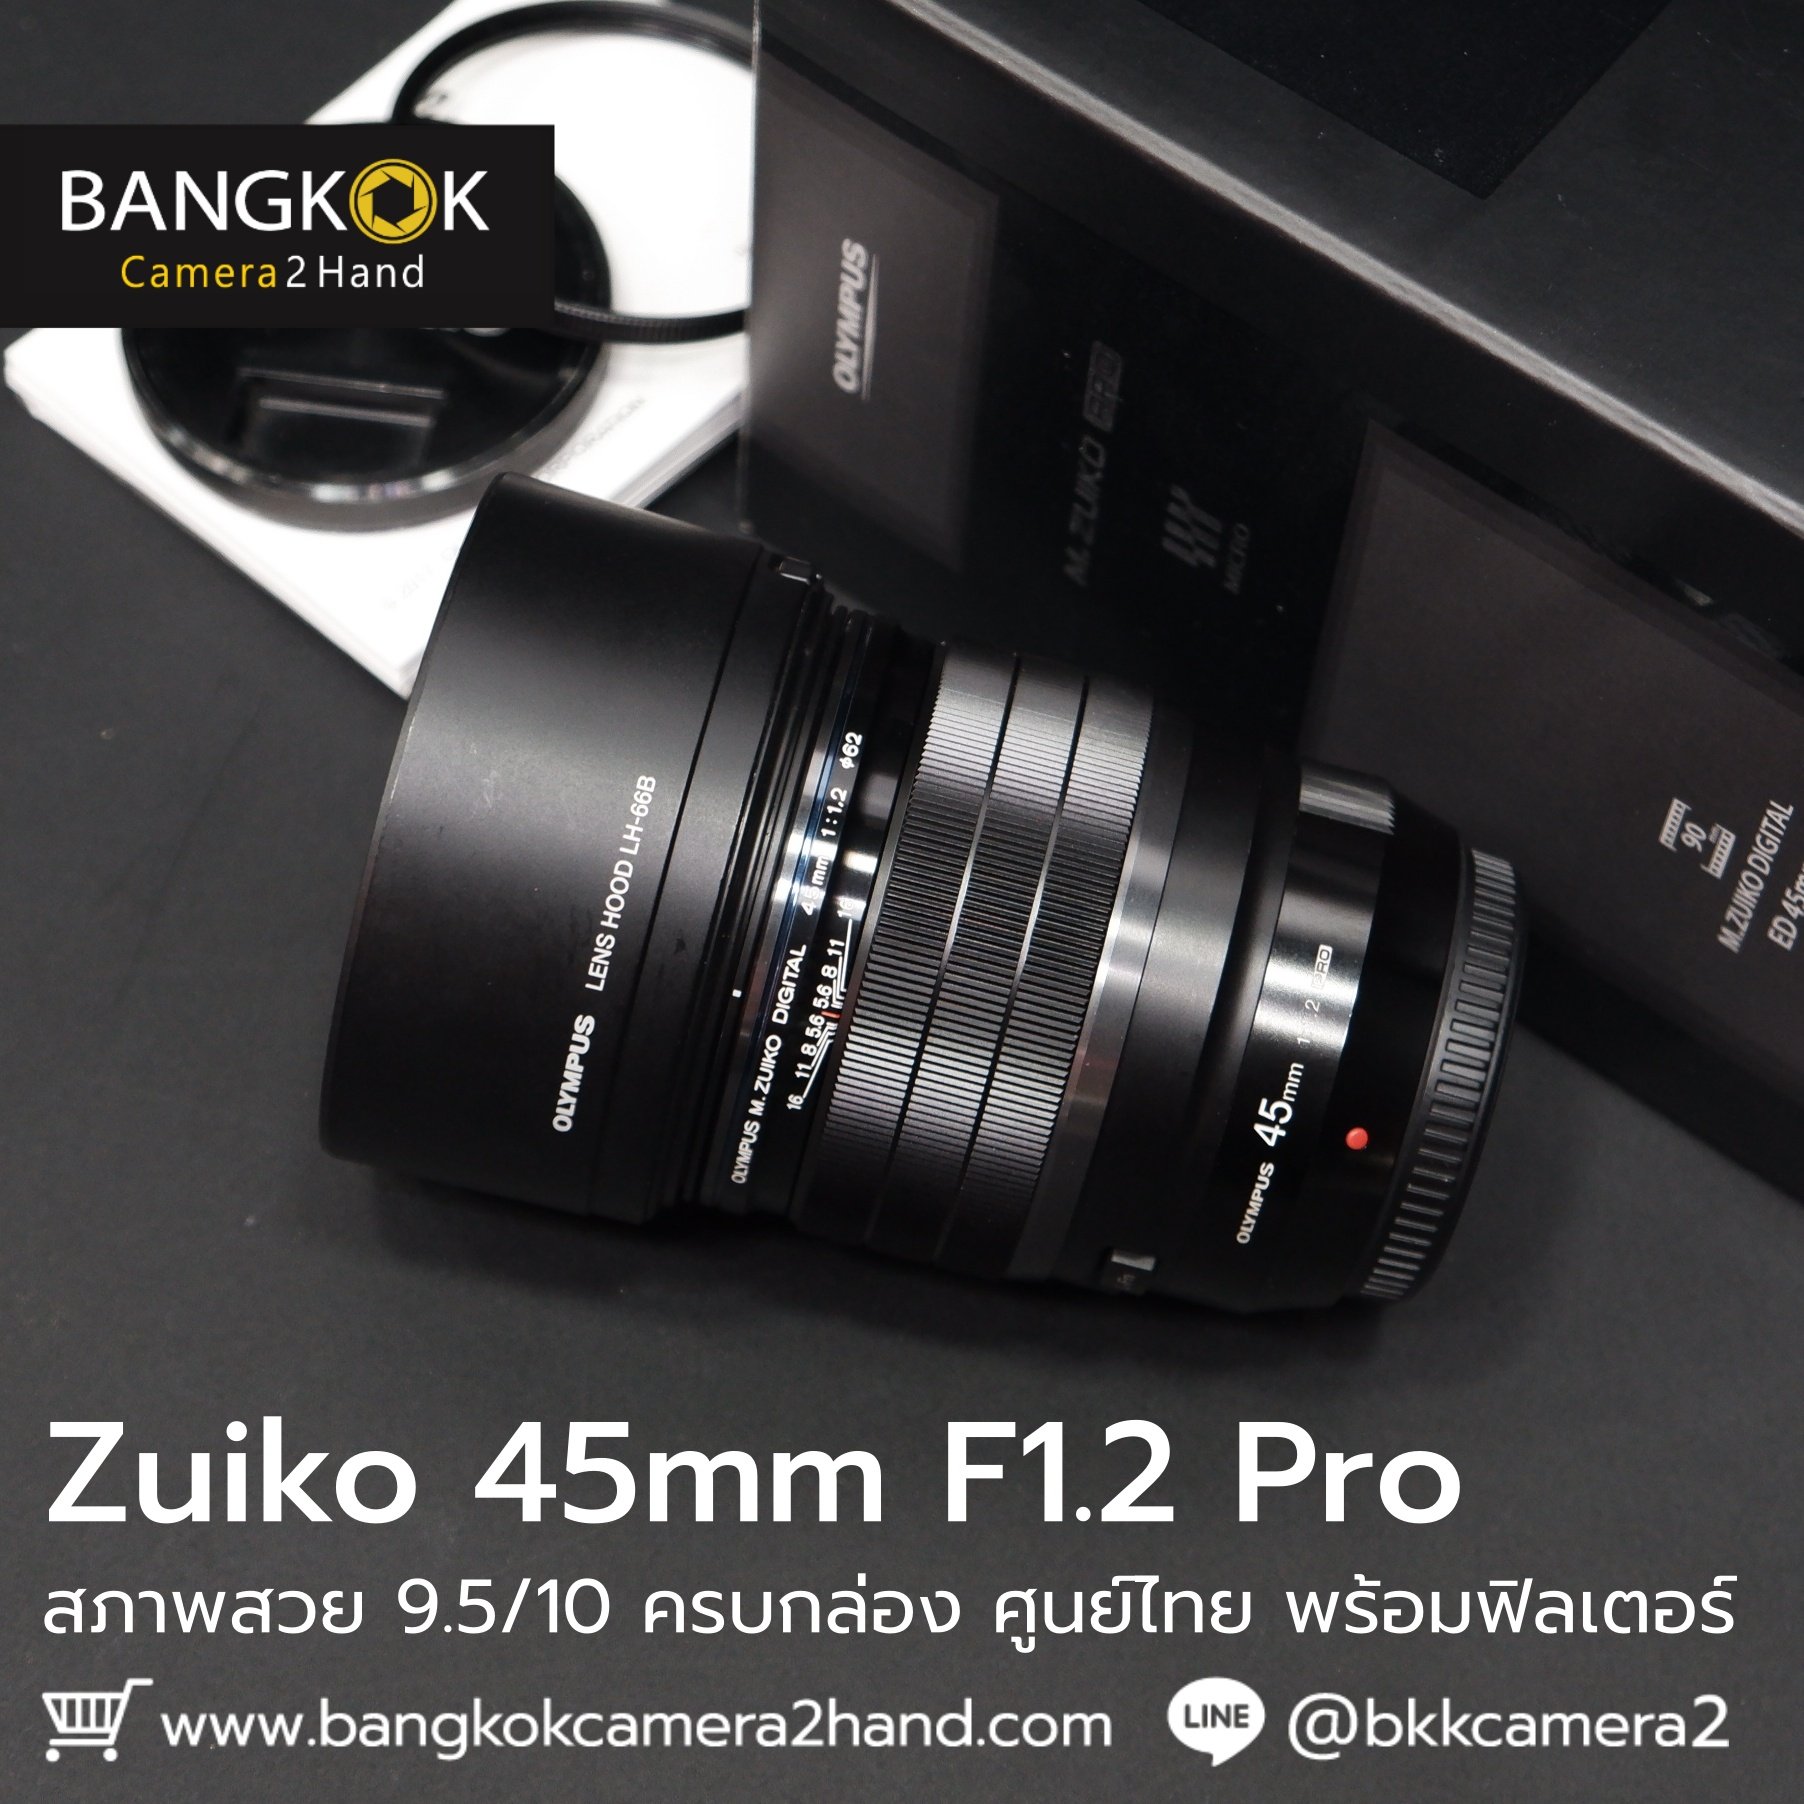 Zuiko 45mm F1.2 Pro ศูนย์ไทย ครบกล่อง